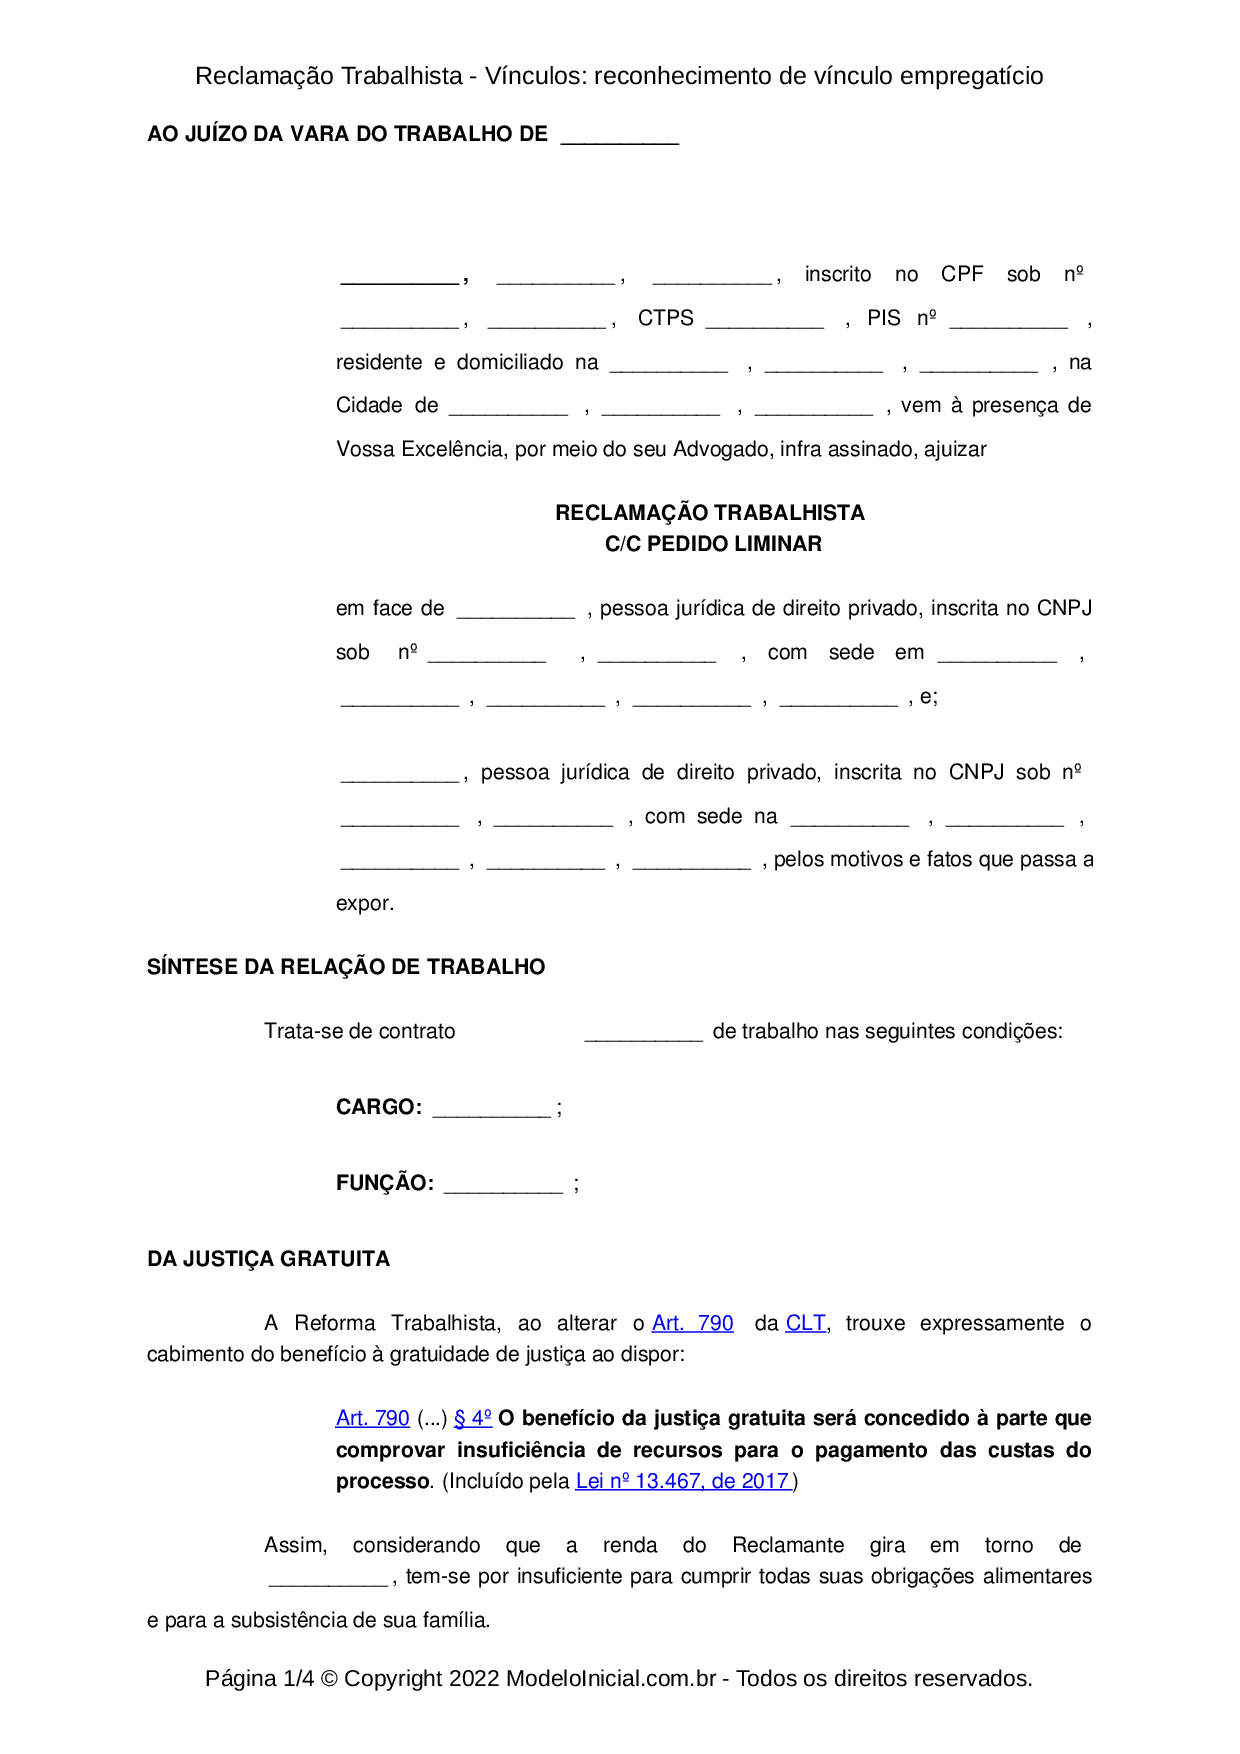 PROPOSTA DE TRABALHO DIGITADOR ONLINE - Baixar pdf de